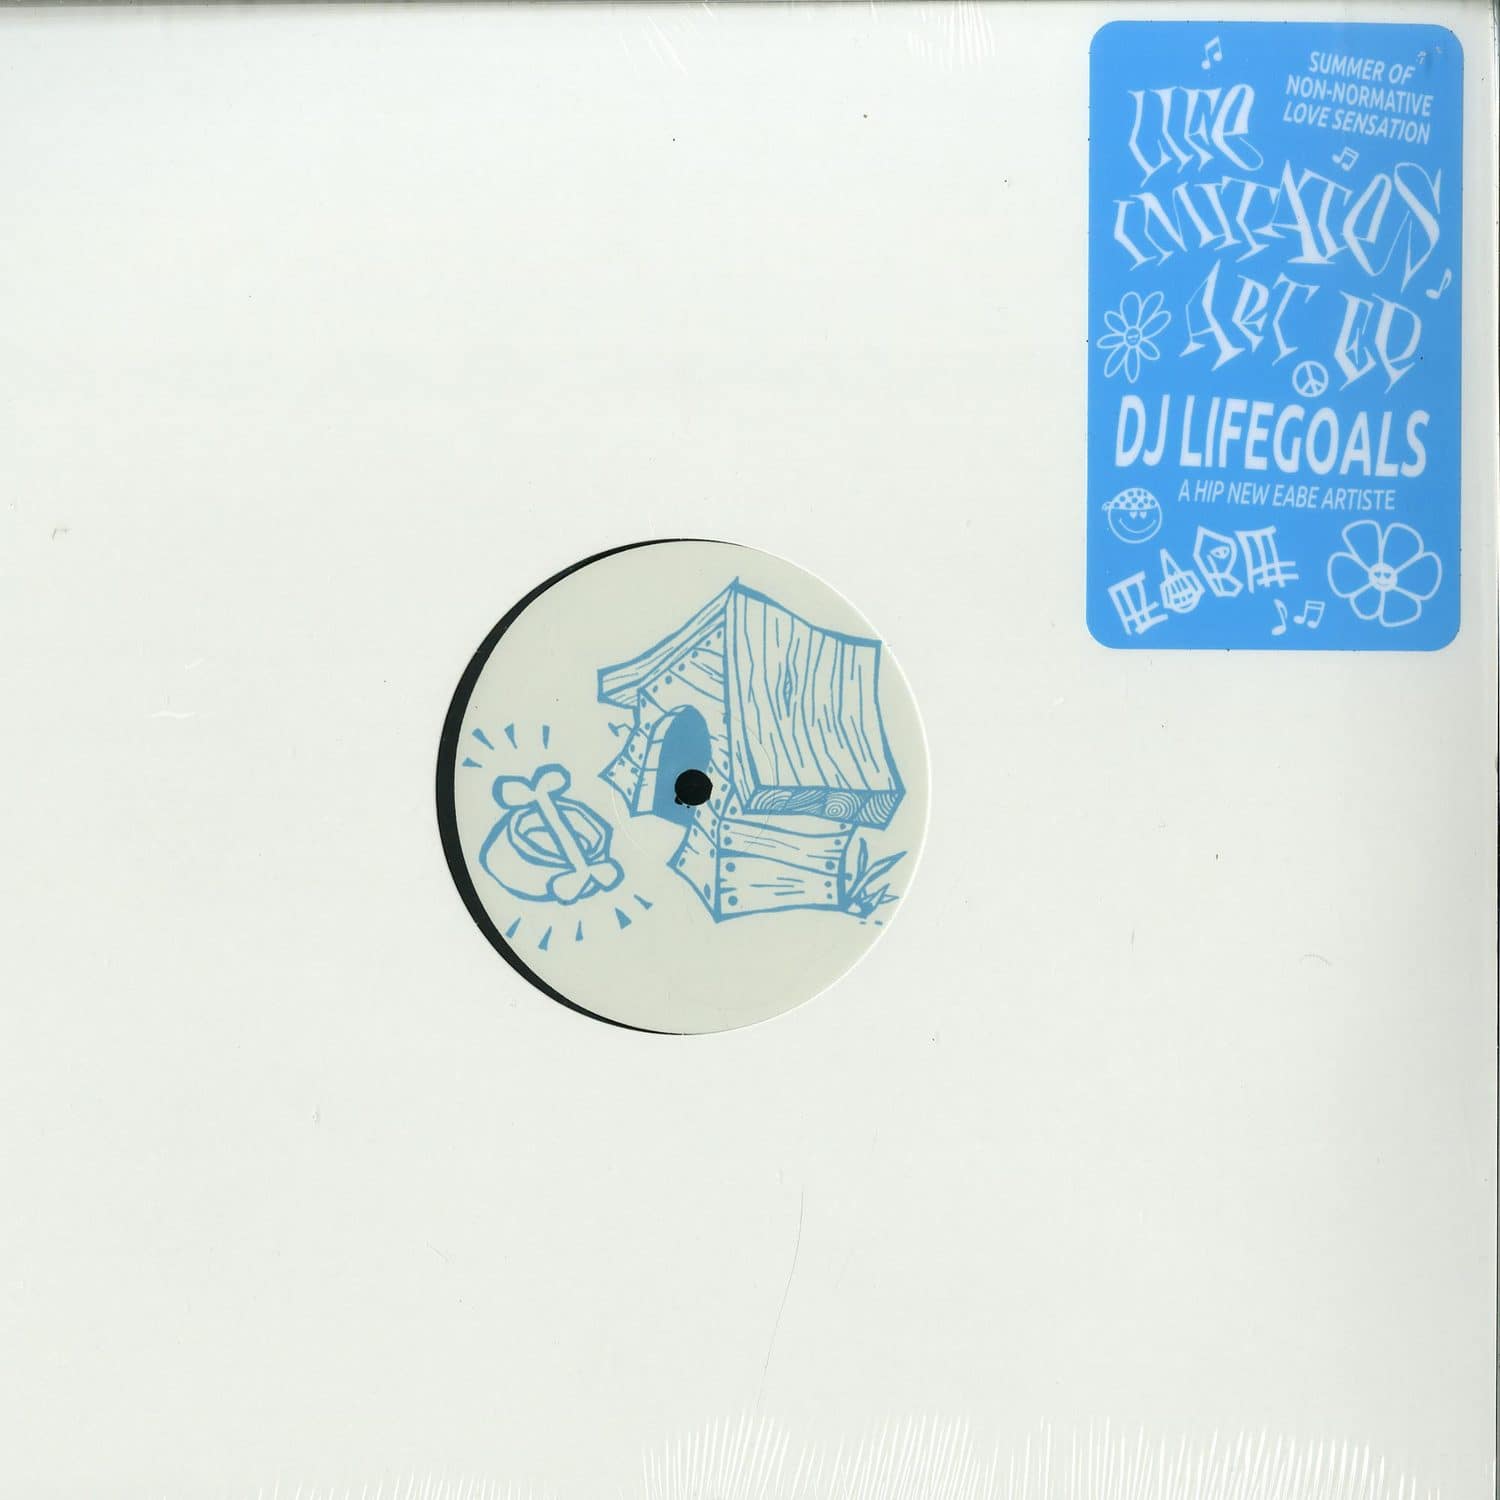 DJ Lifegoals - LIFE IMITATES ART EP